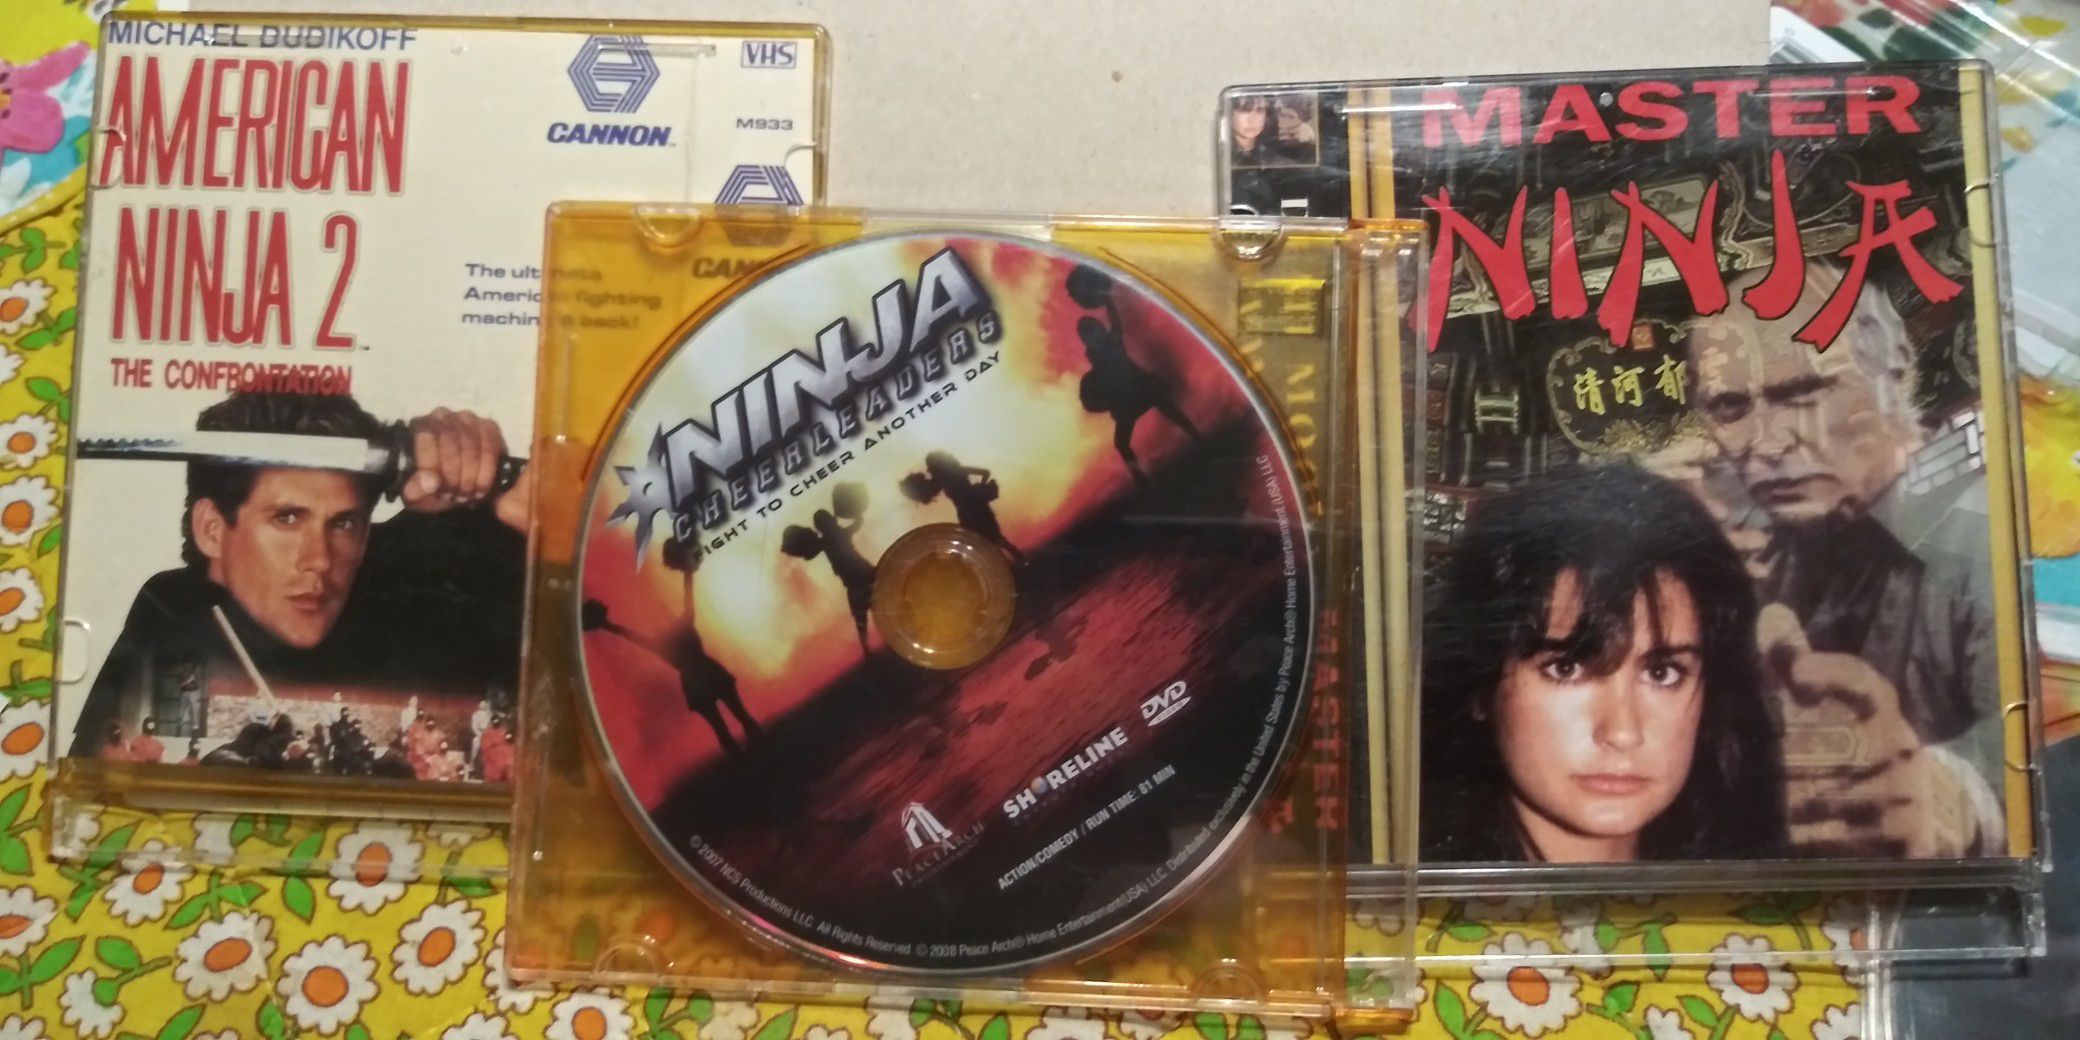 6 ninja dvds